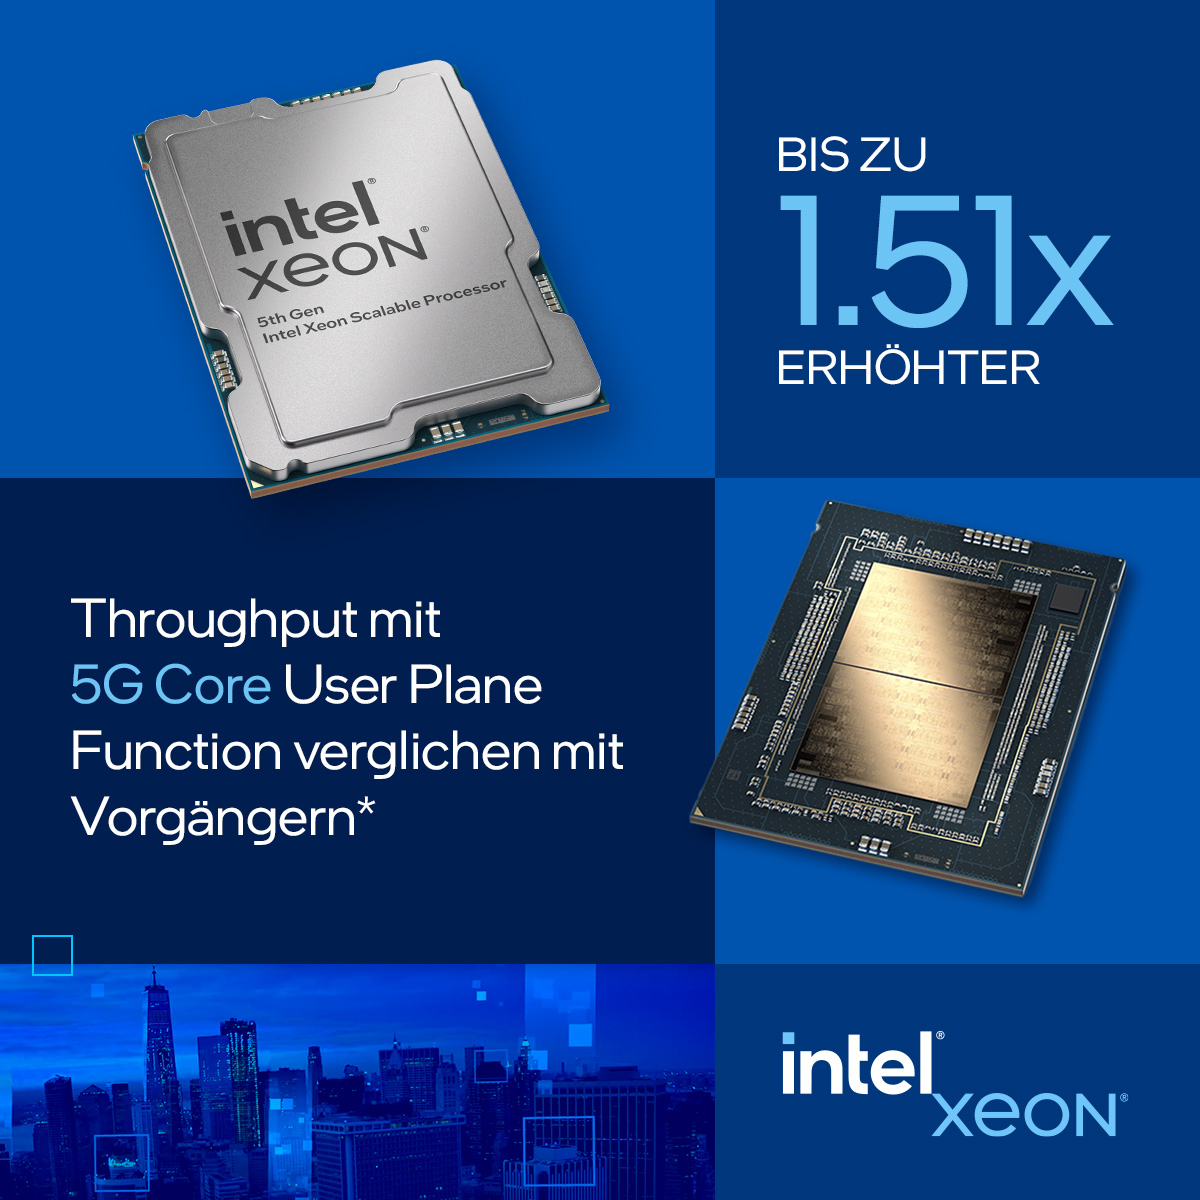 Bis 2028 könnte sich der mobile Datenverkehr vervierfachen. Im Herzen dieser Entwicklung befindet sich der Intel® Xeon® Prozessor der 5. Generation, welcher entscheidende Verbesserungen für 5G-Netzwerke bieten kann. Für mehr Informationen: intel.ly/3wf1RKG